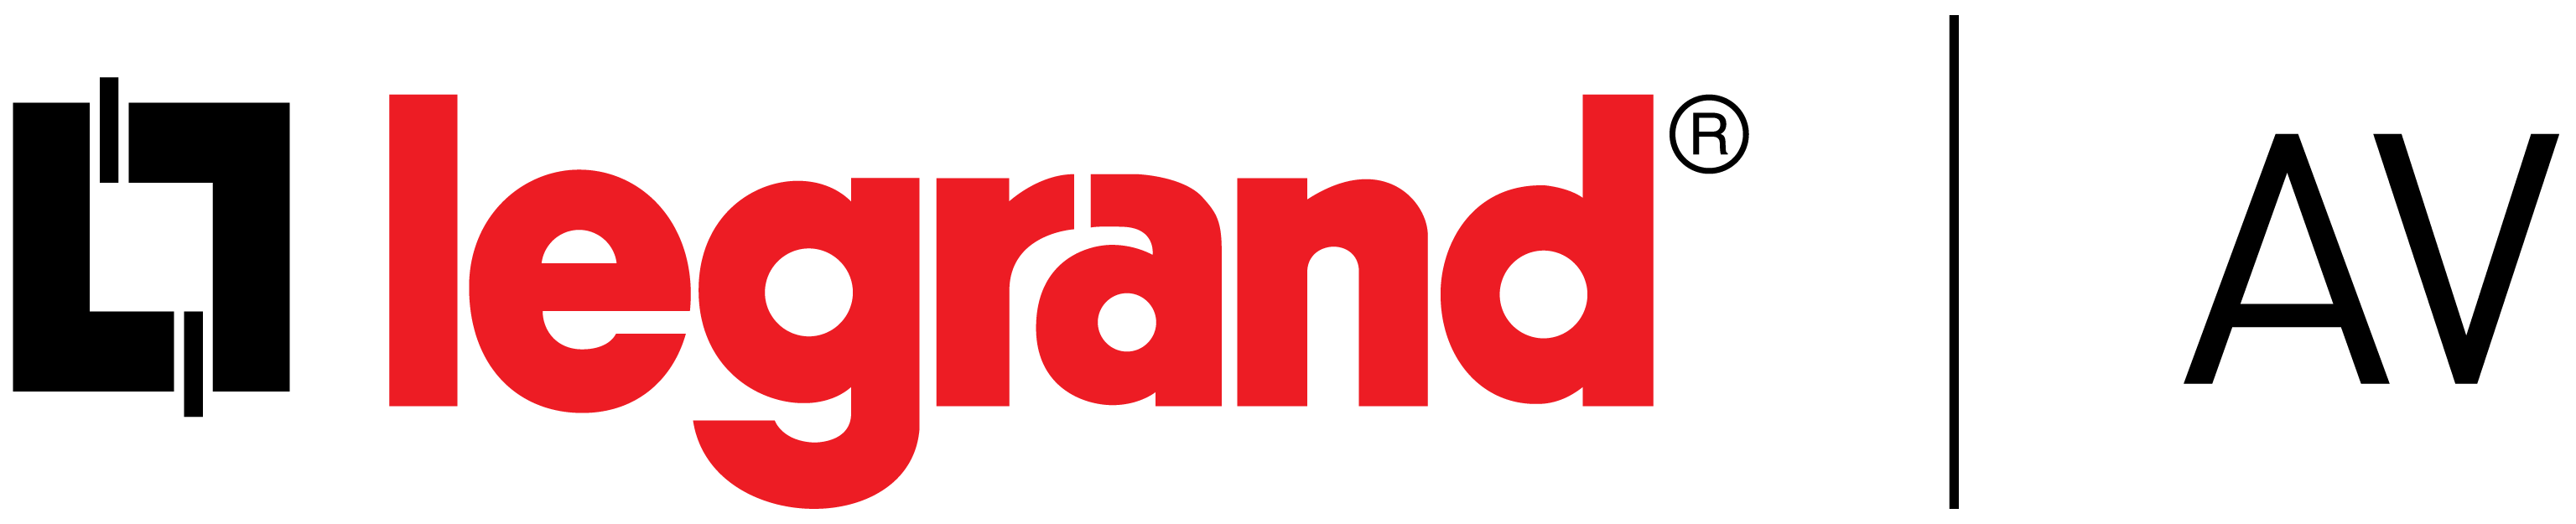 legrand | AV logo